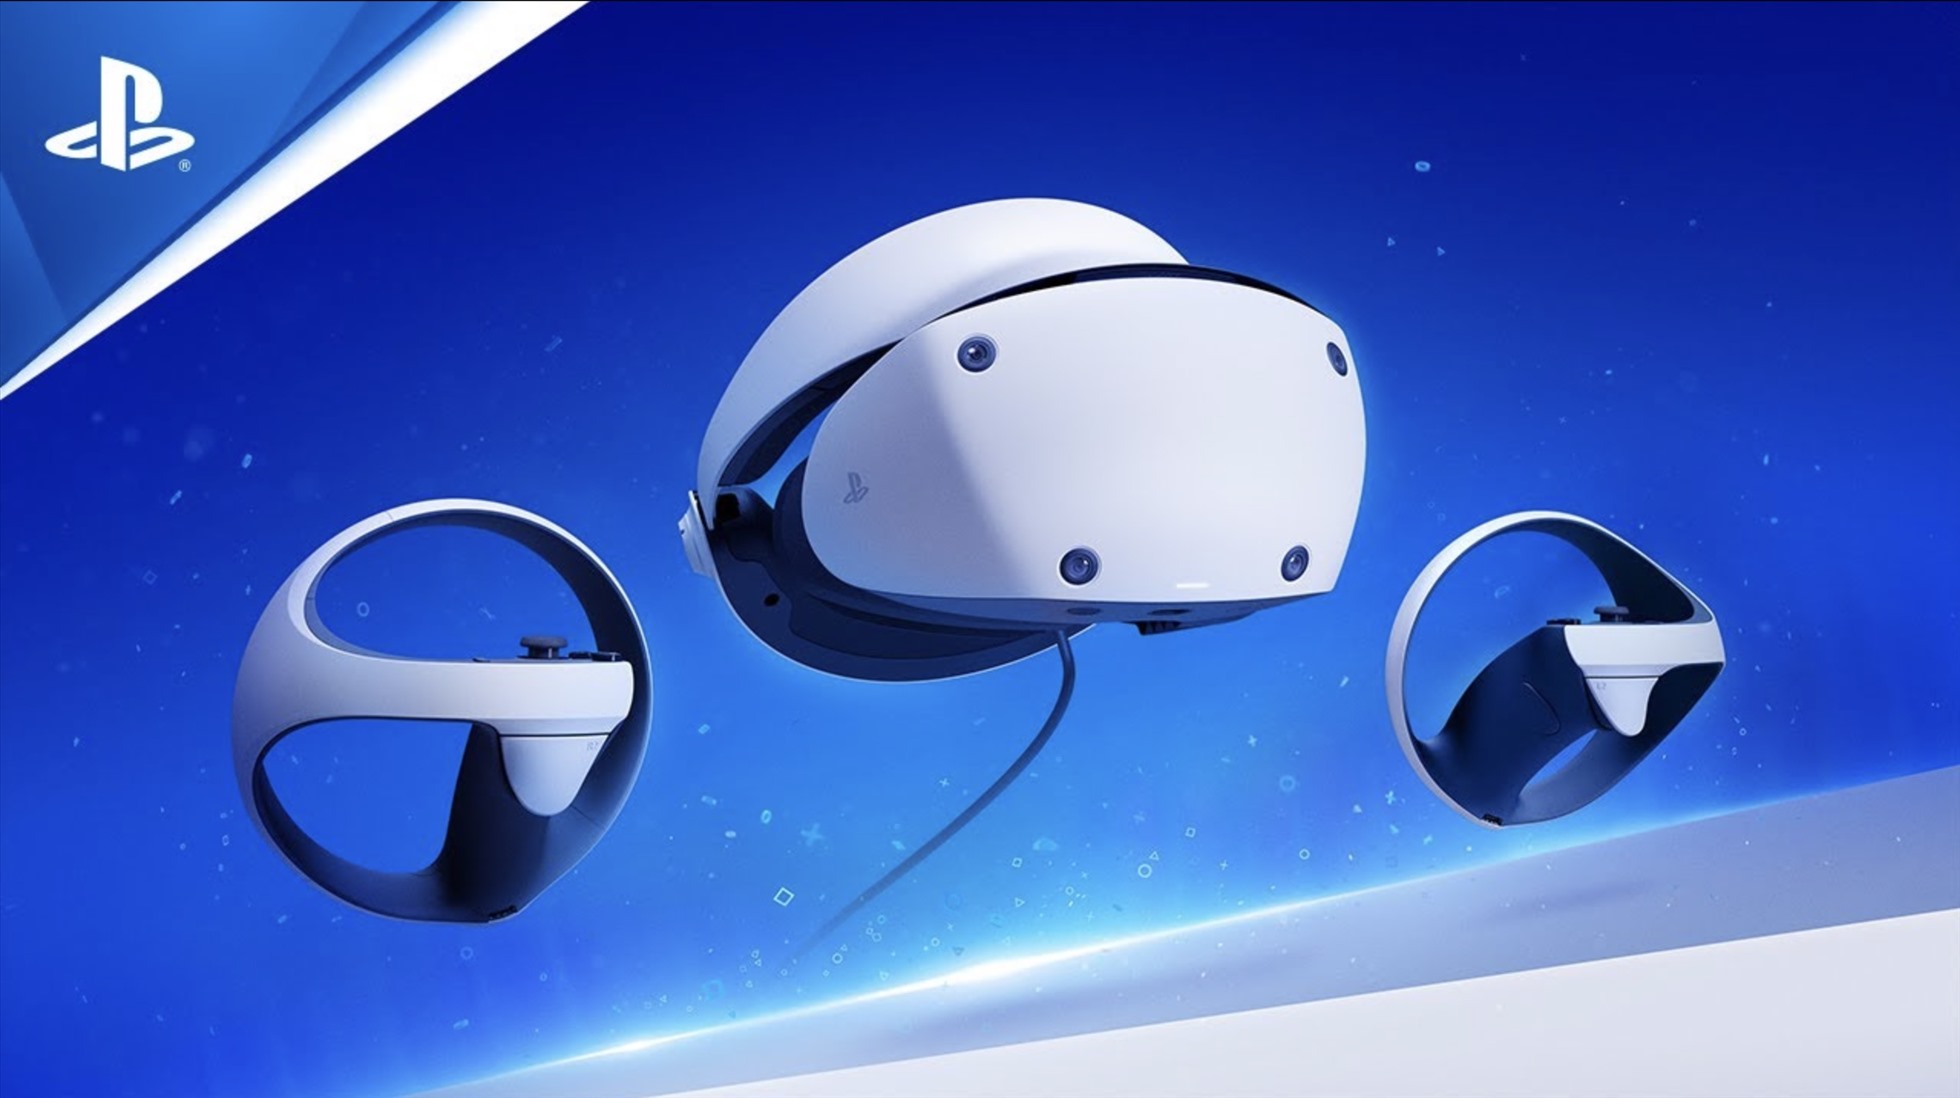 PlayStation VR 2 kết hợp sức mạnh của PlayStation 5 với công nghệ điều khiển chuyển động và theo dõi bằng mắt mới. Ảnh: Sony